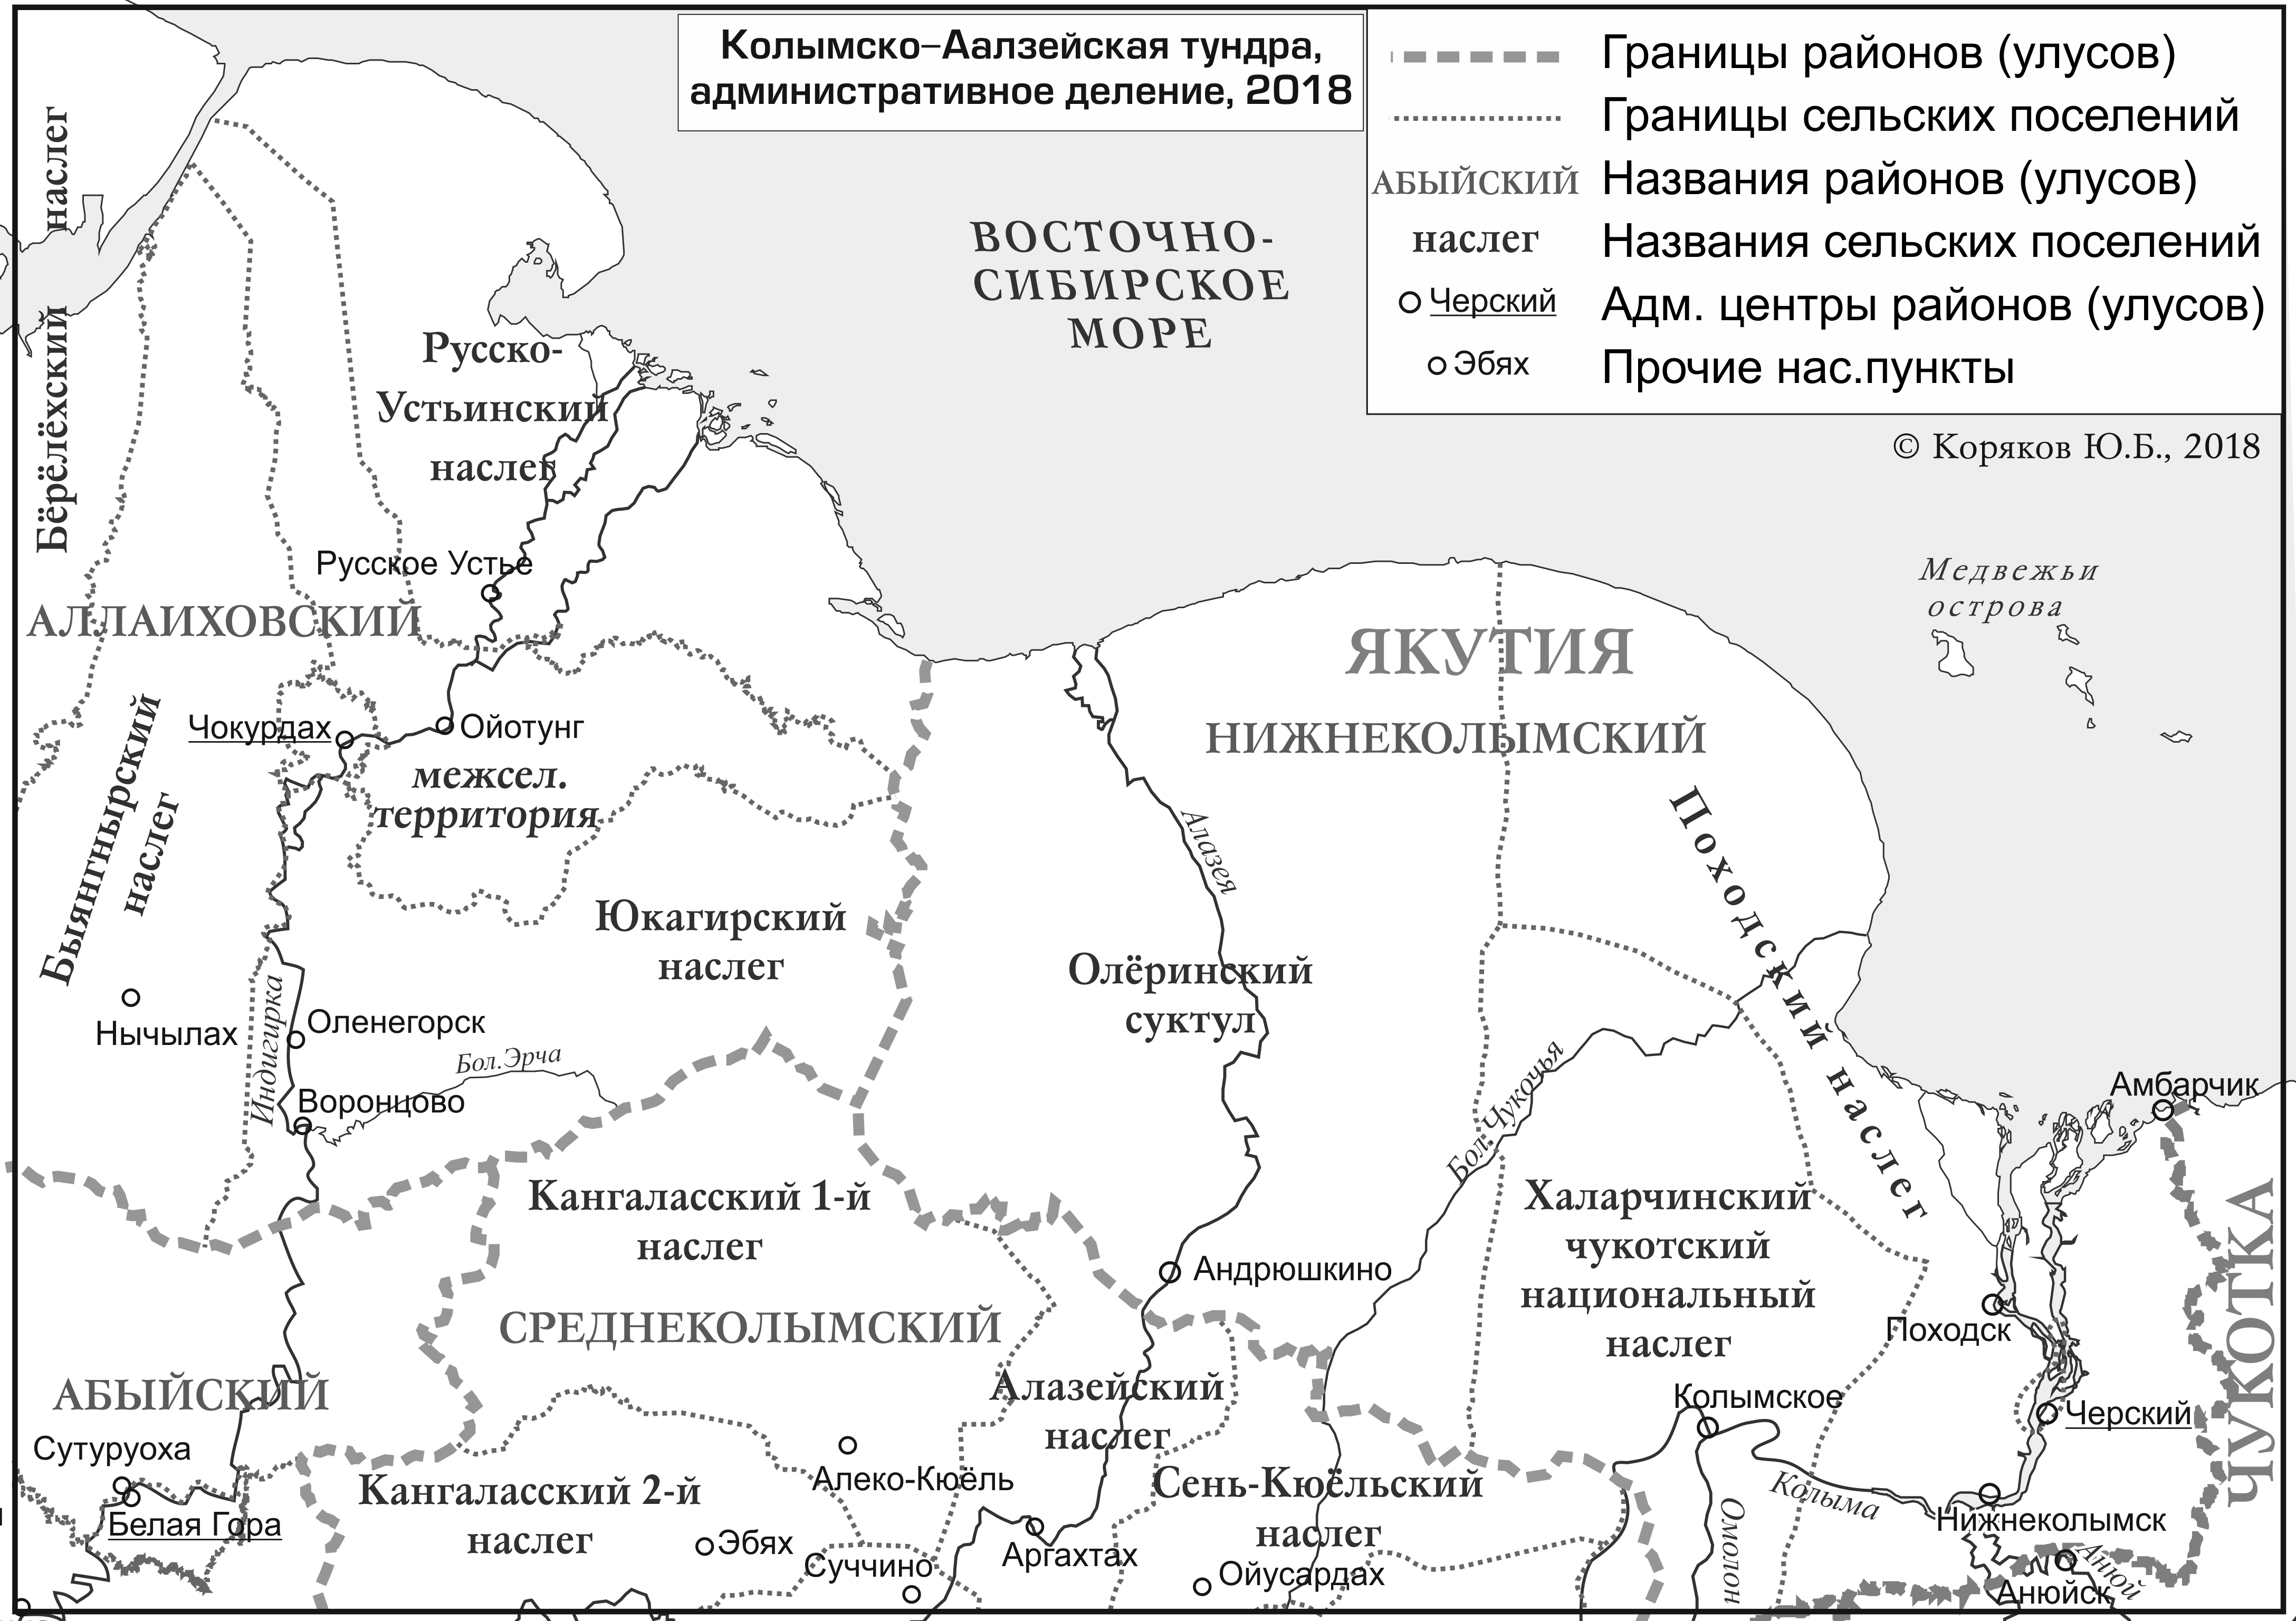 Колымско-Алазейская тундра, административное деление, 2018; автор Ю. Б. Коряков